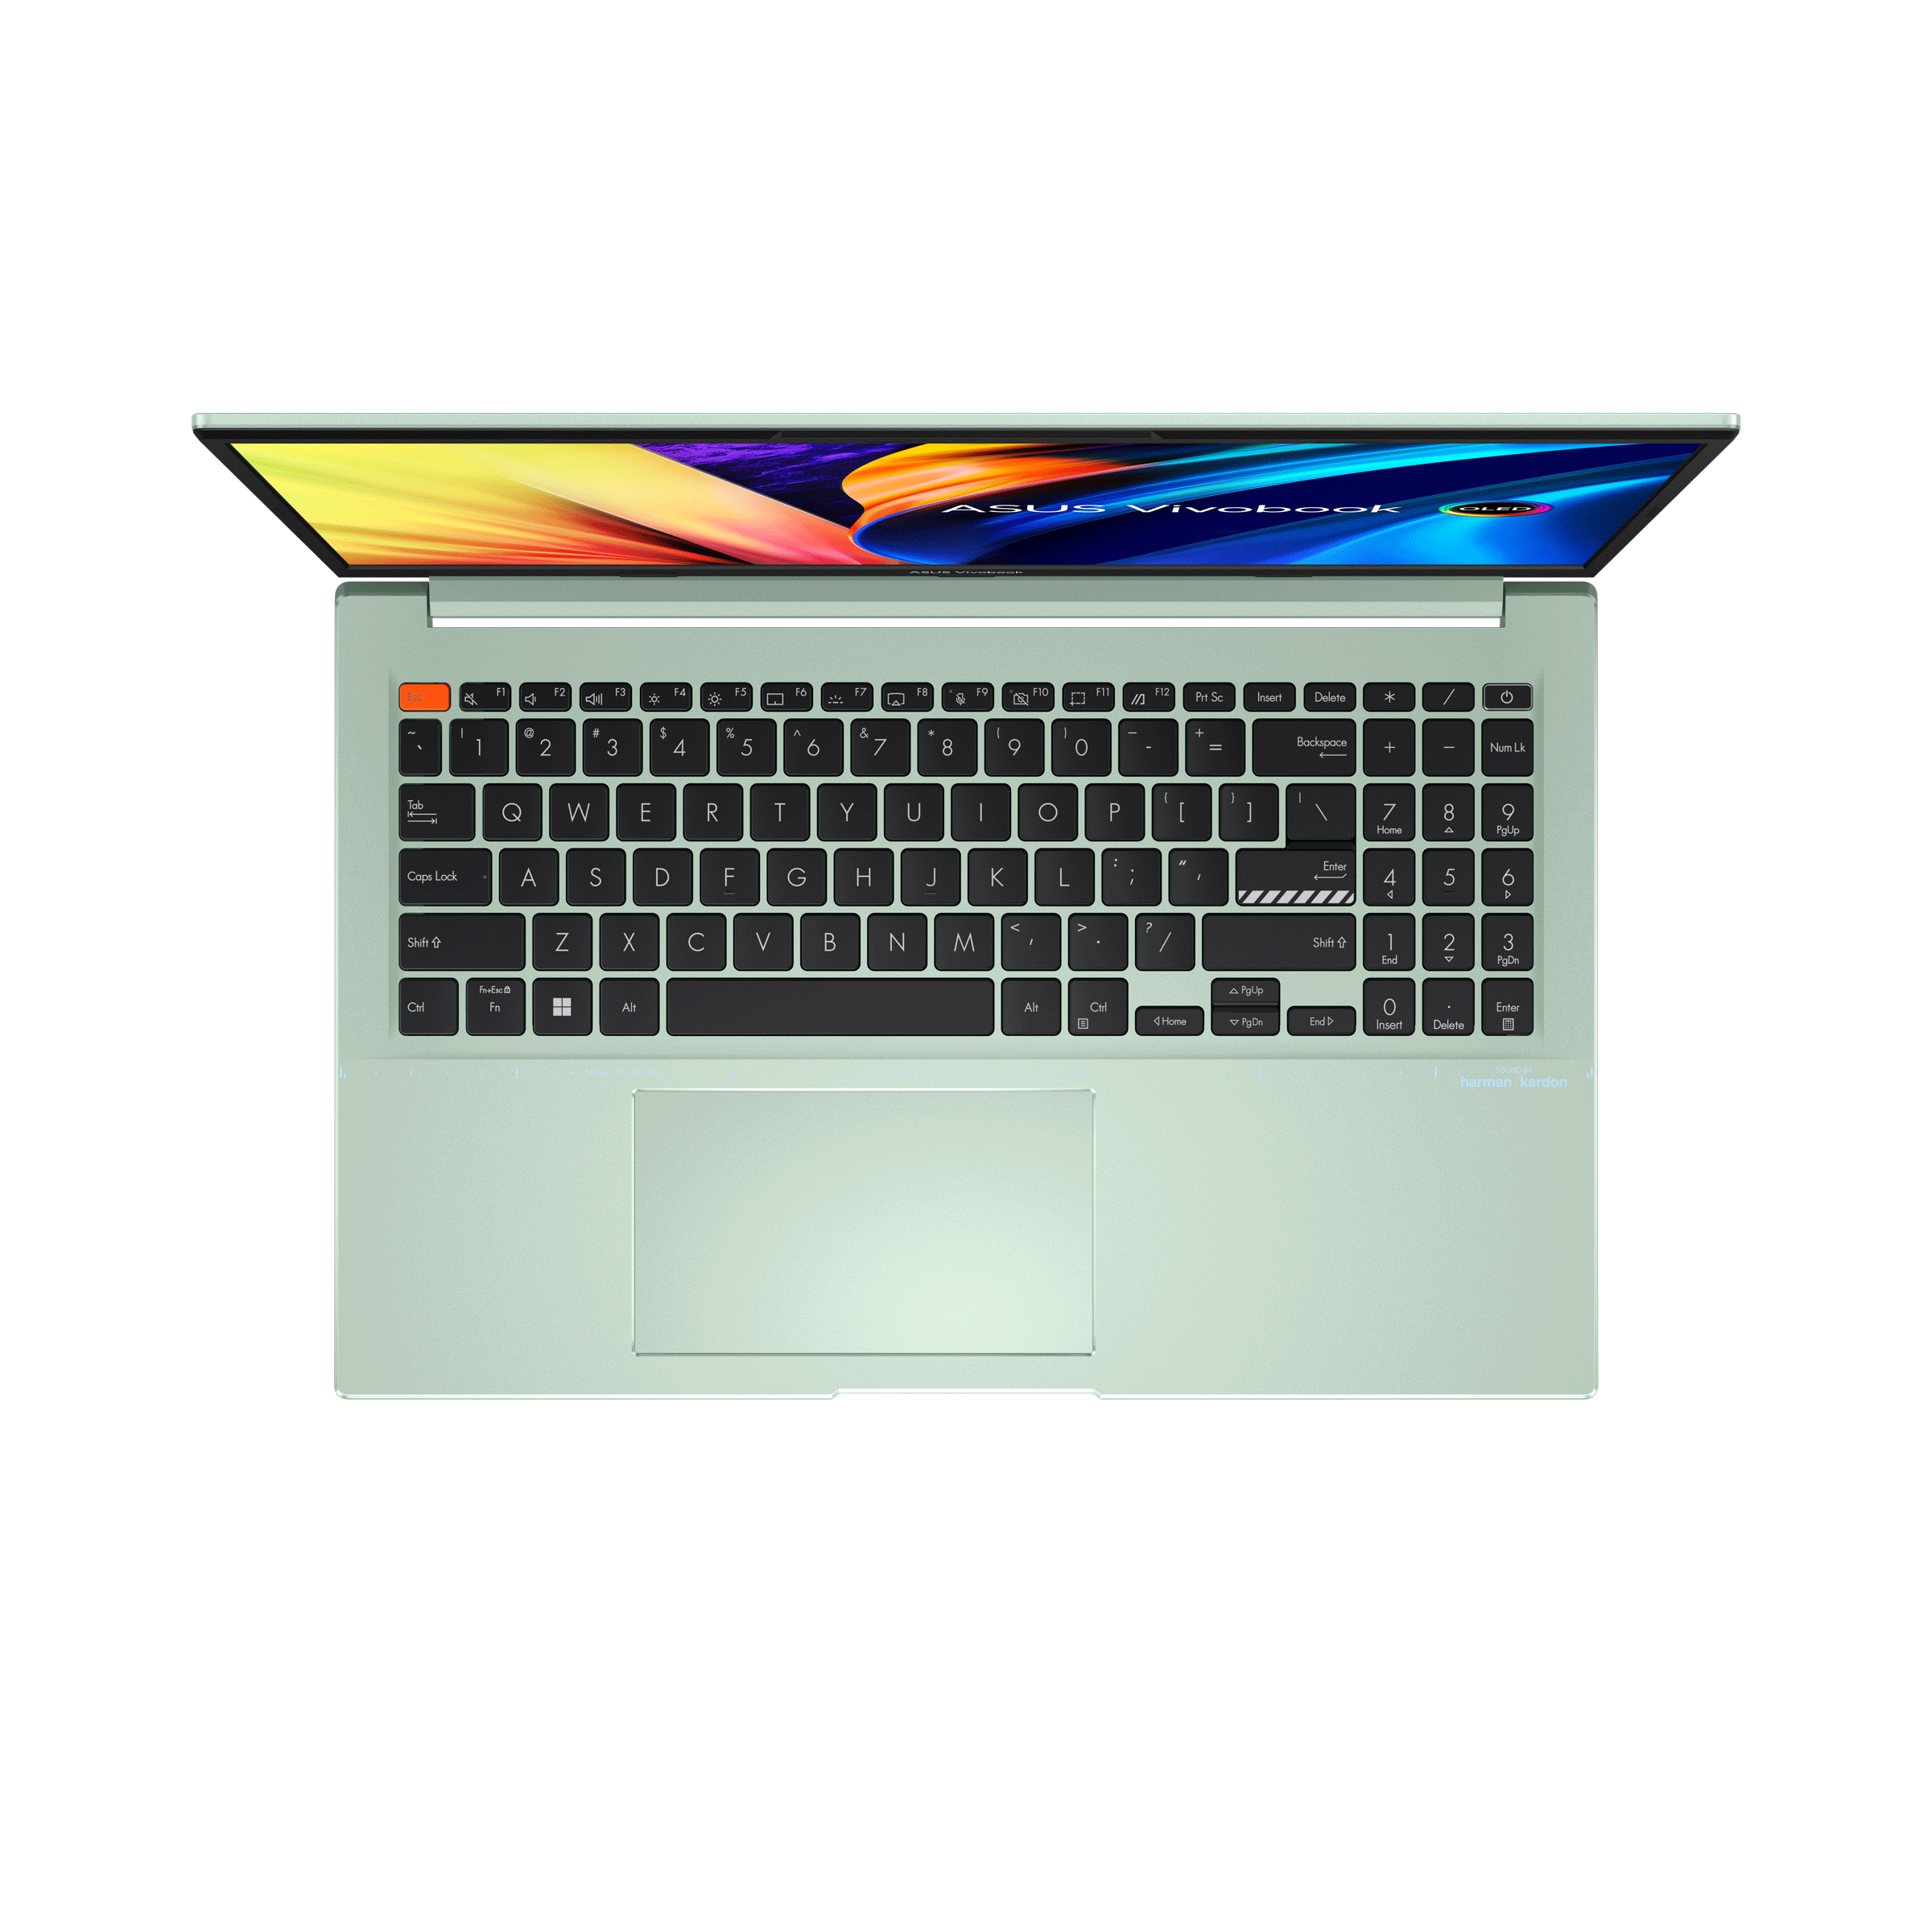 VivoBook S 15 OLED (D3502)